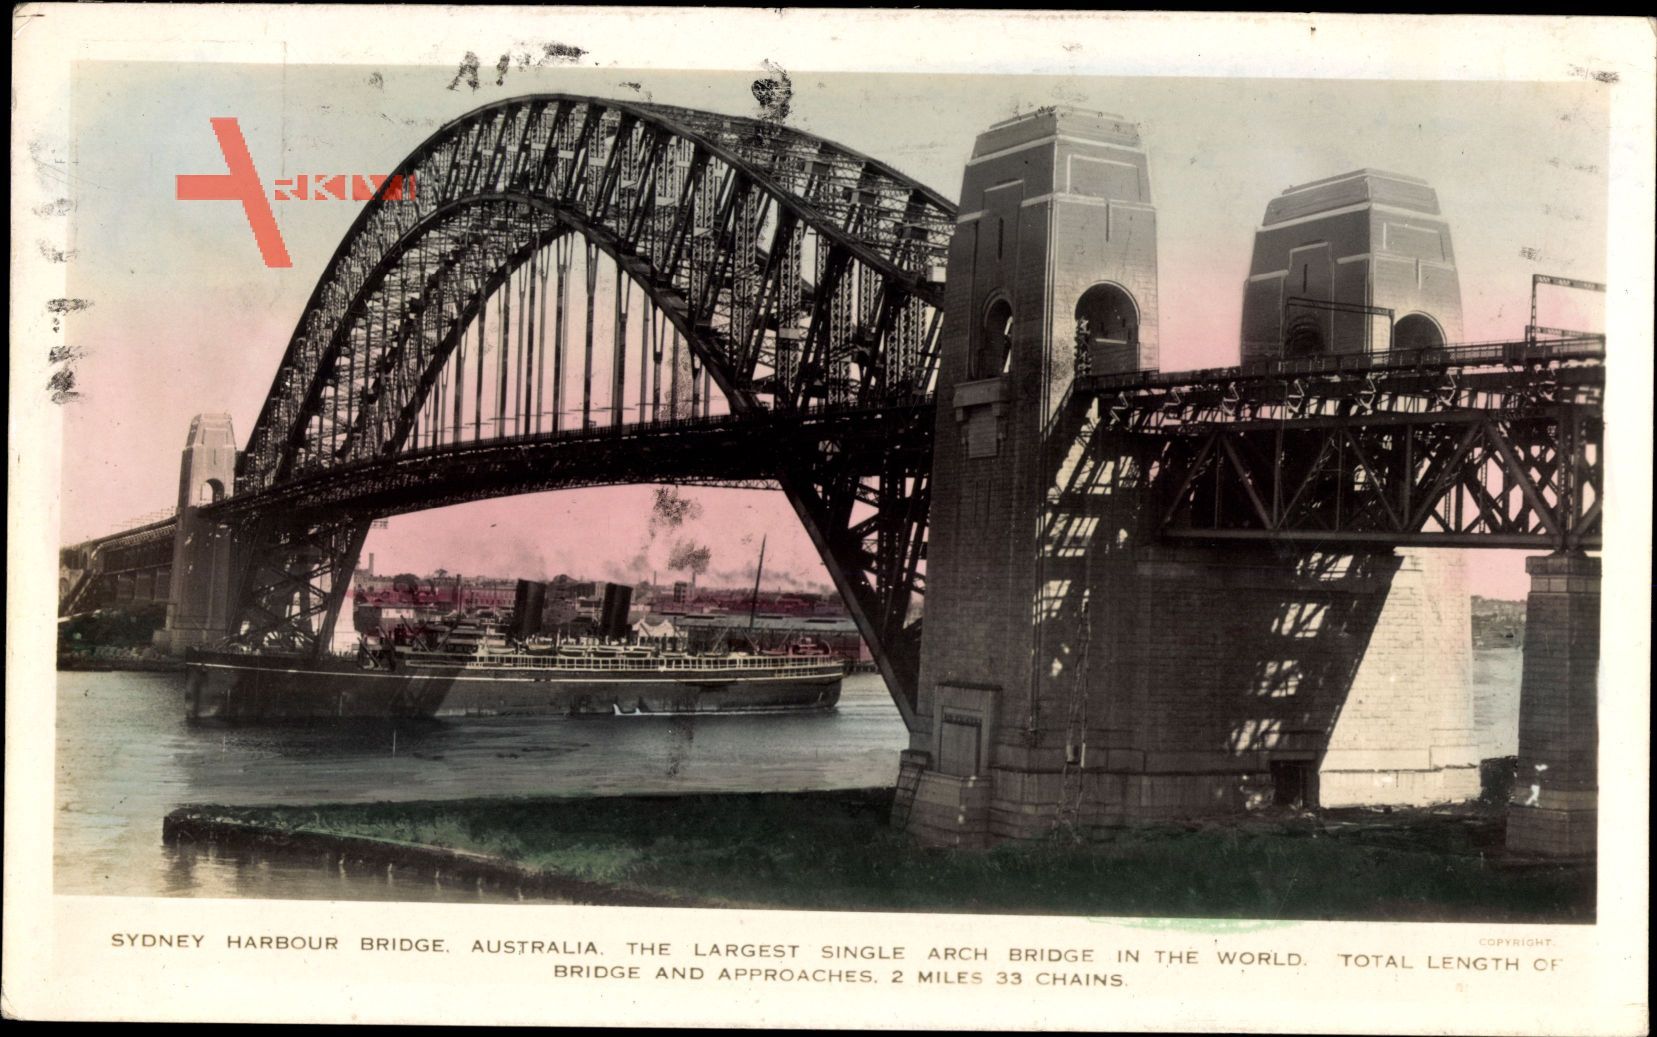 Sydney Australien, Harbour Bridge, largest single arch bridge in the world